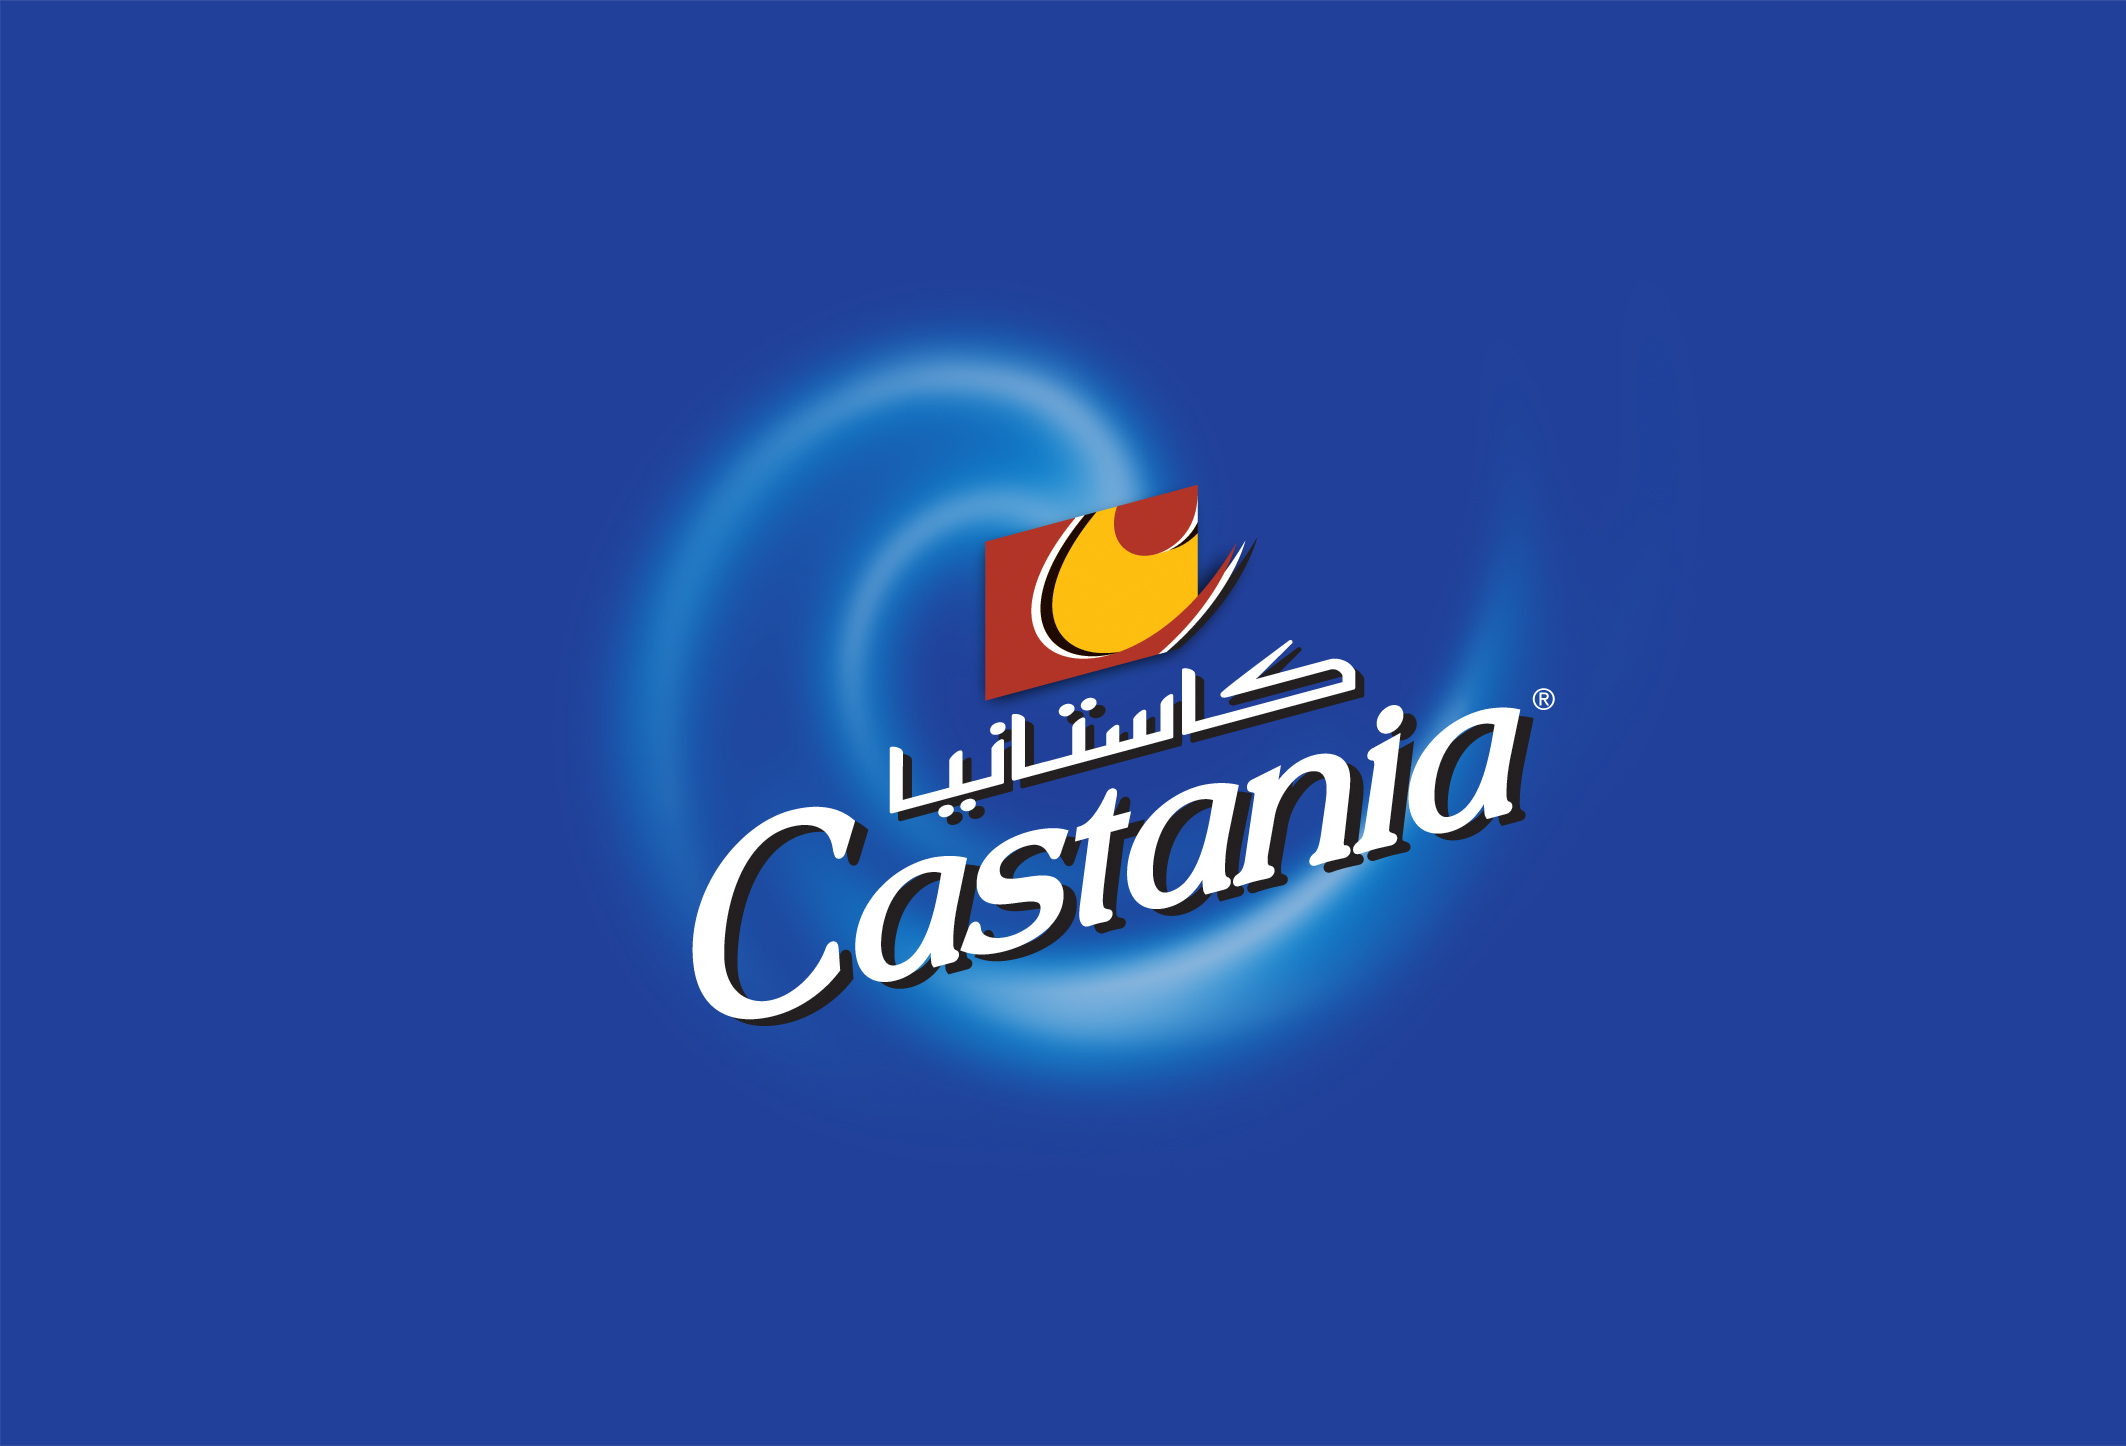 castania logo